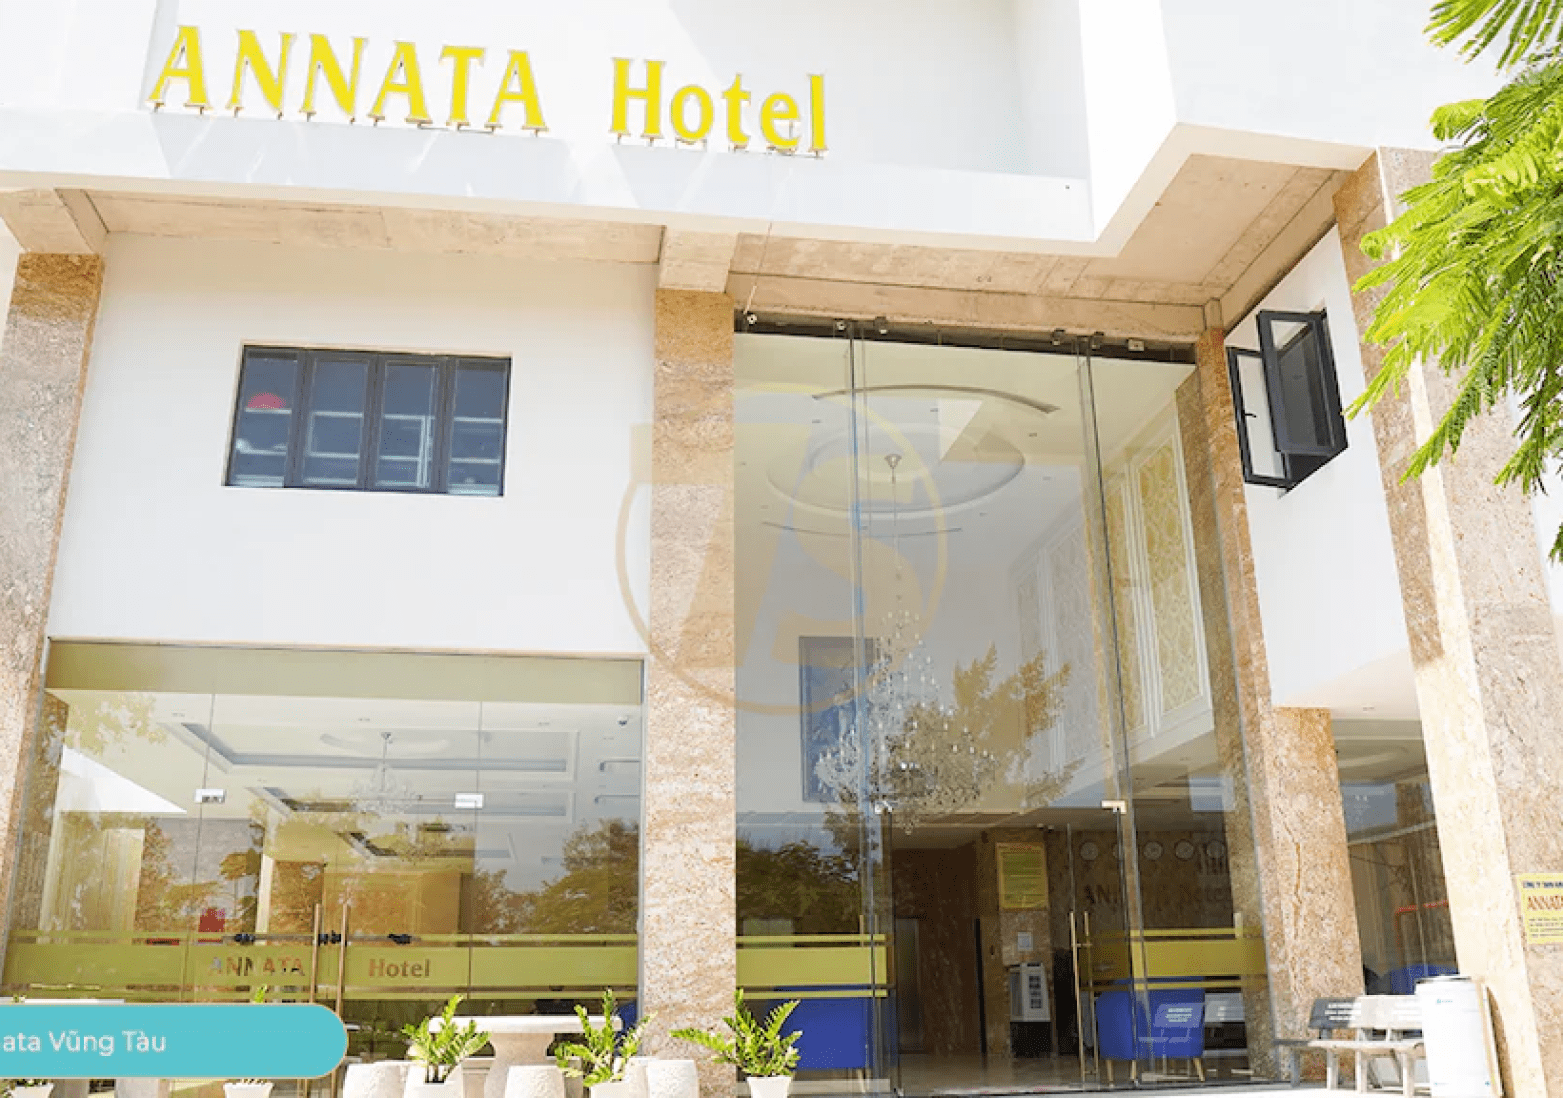 Trang chủ | Annata Hotel - Hotel đẹp giá rẻ ngay trung tâm Vũng Tàu